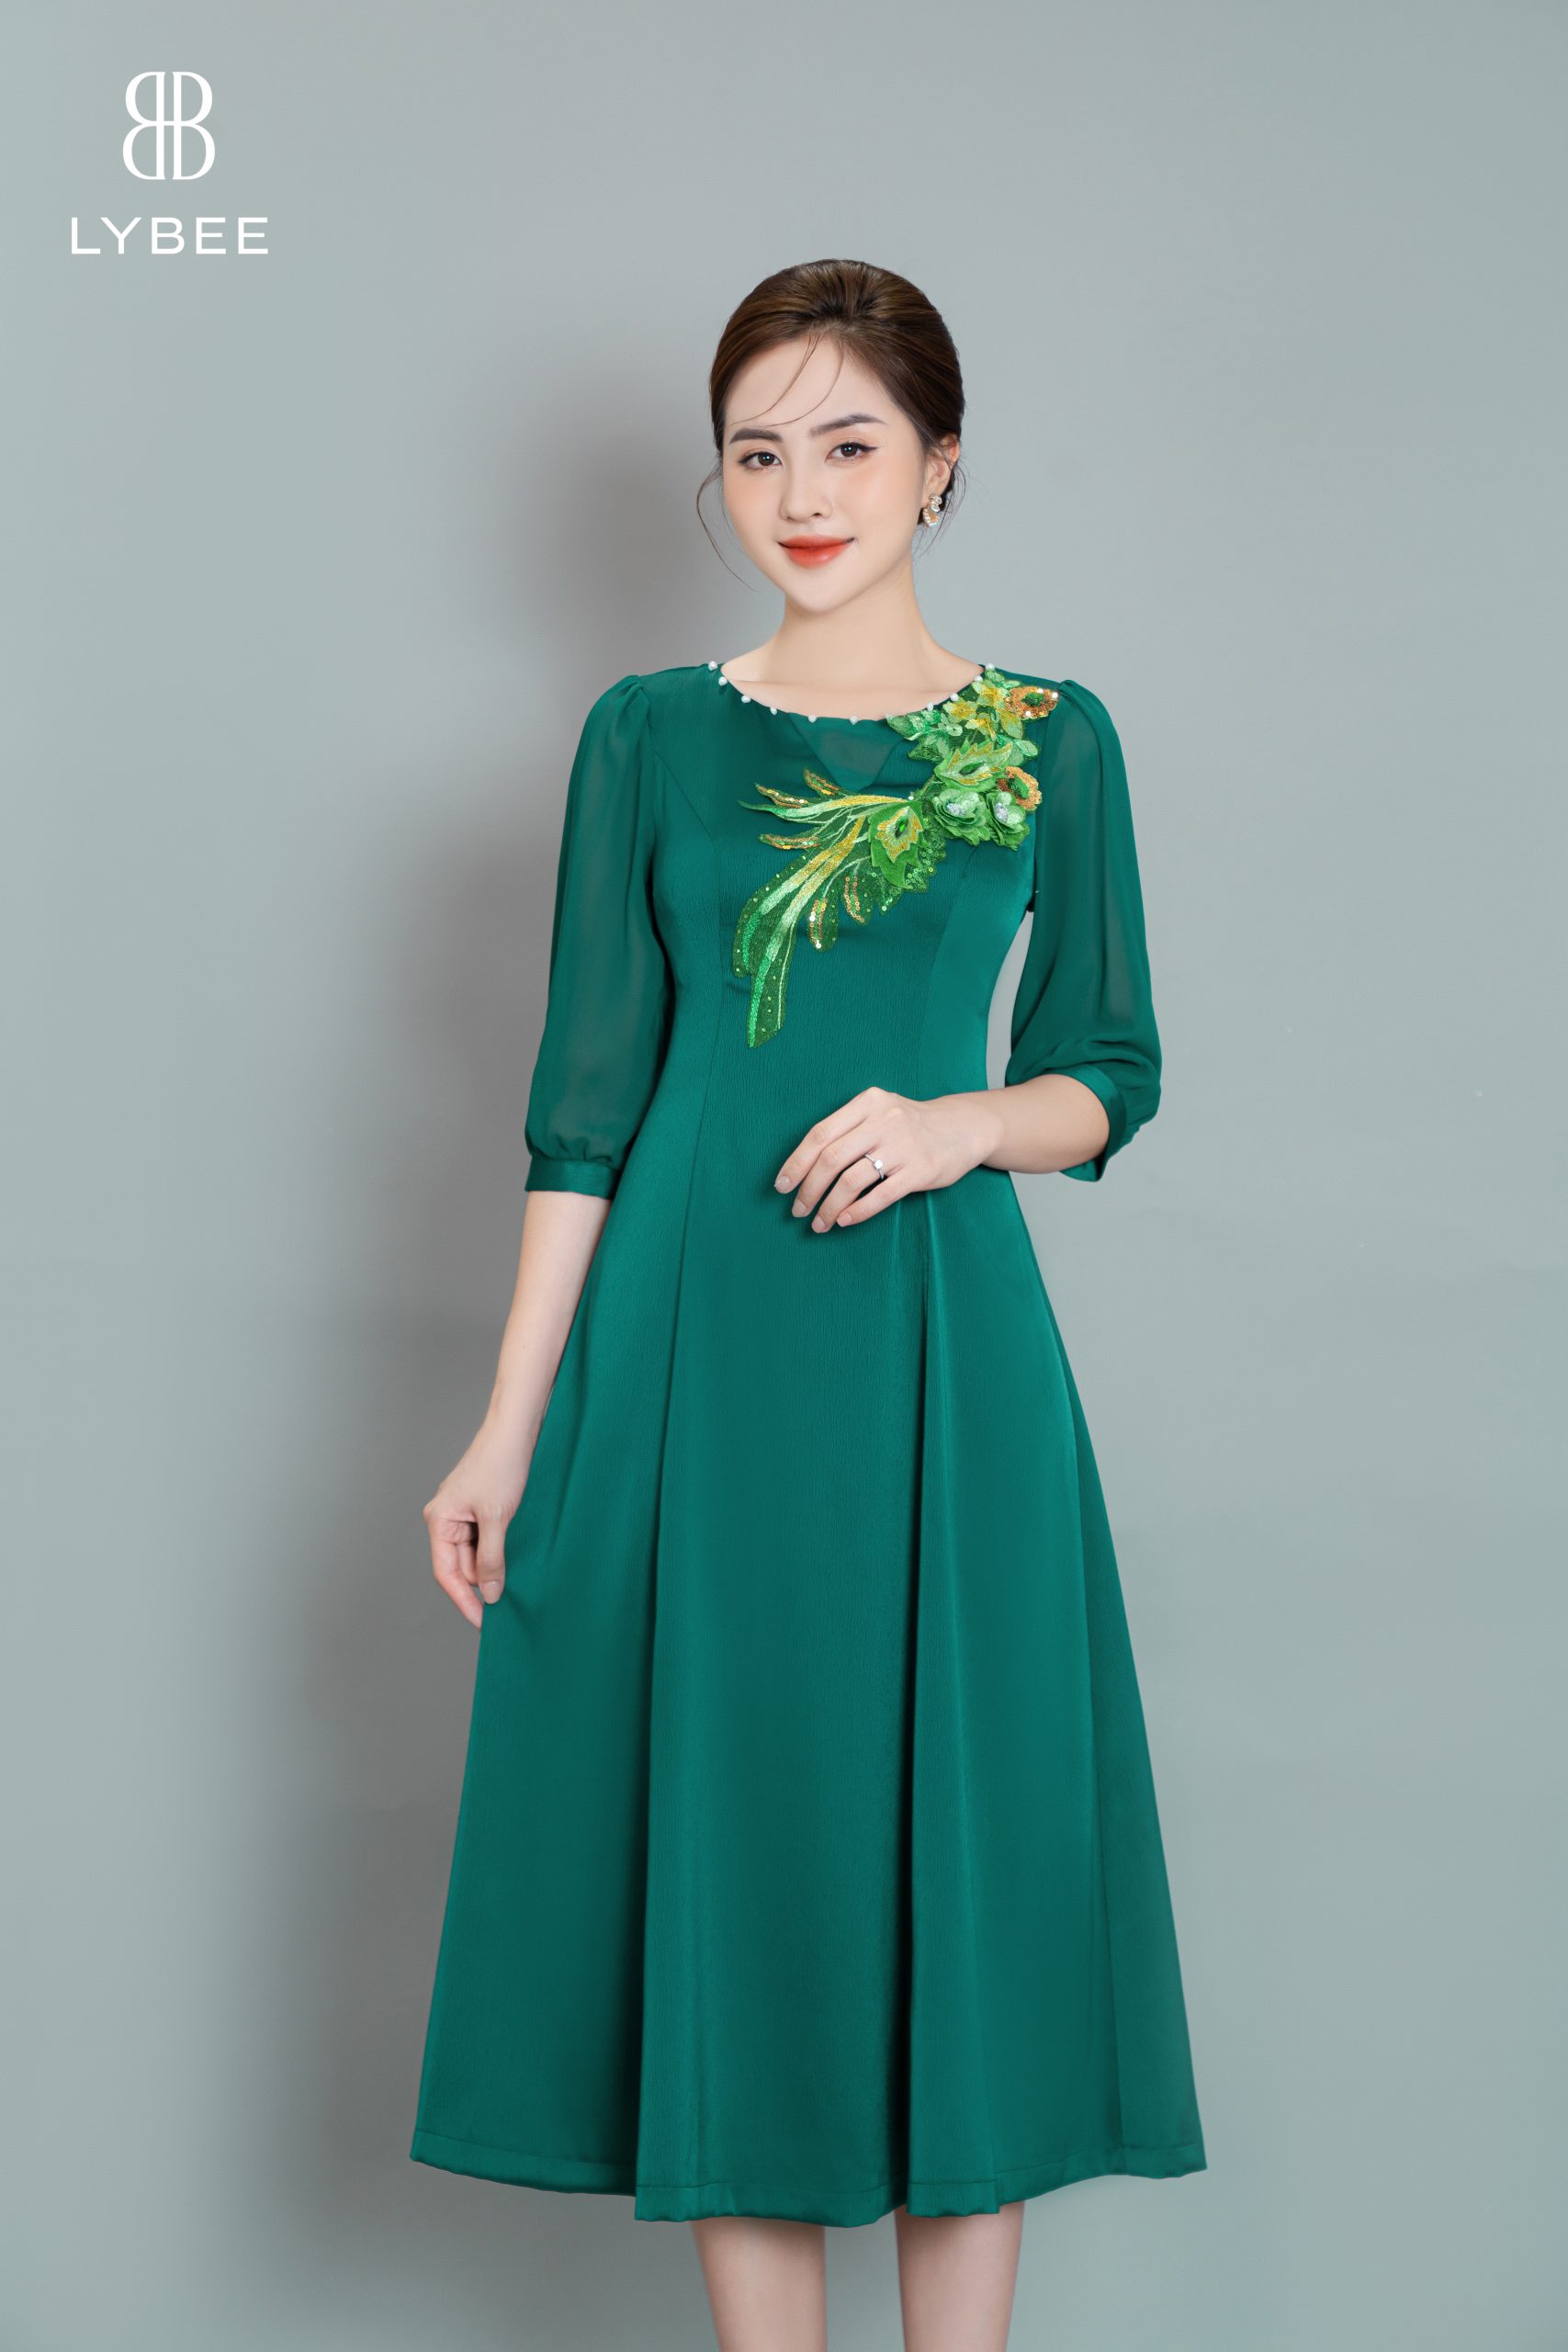 Mẫu váy đầm trung niên đẹp sang trọng trong các thiết kế tối giản mà tinh  tế | Thời trang, Vải vóc, May vá thời trang